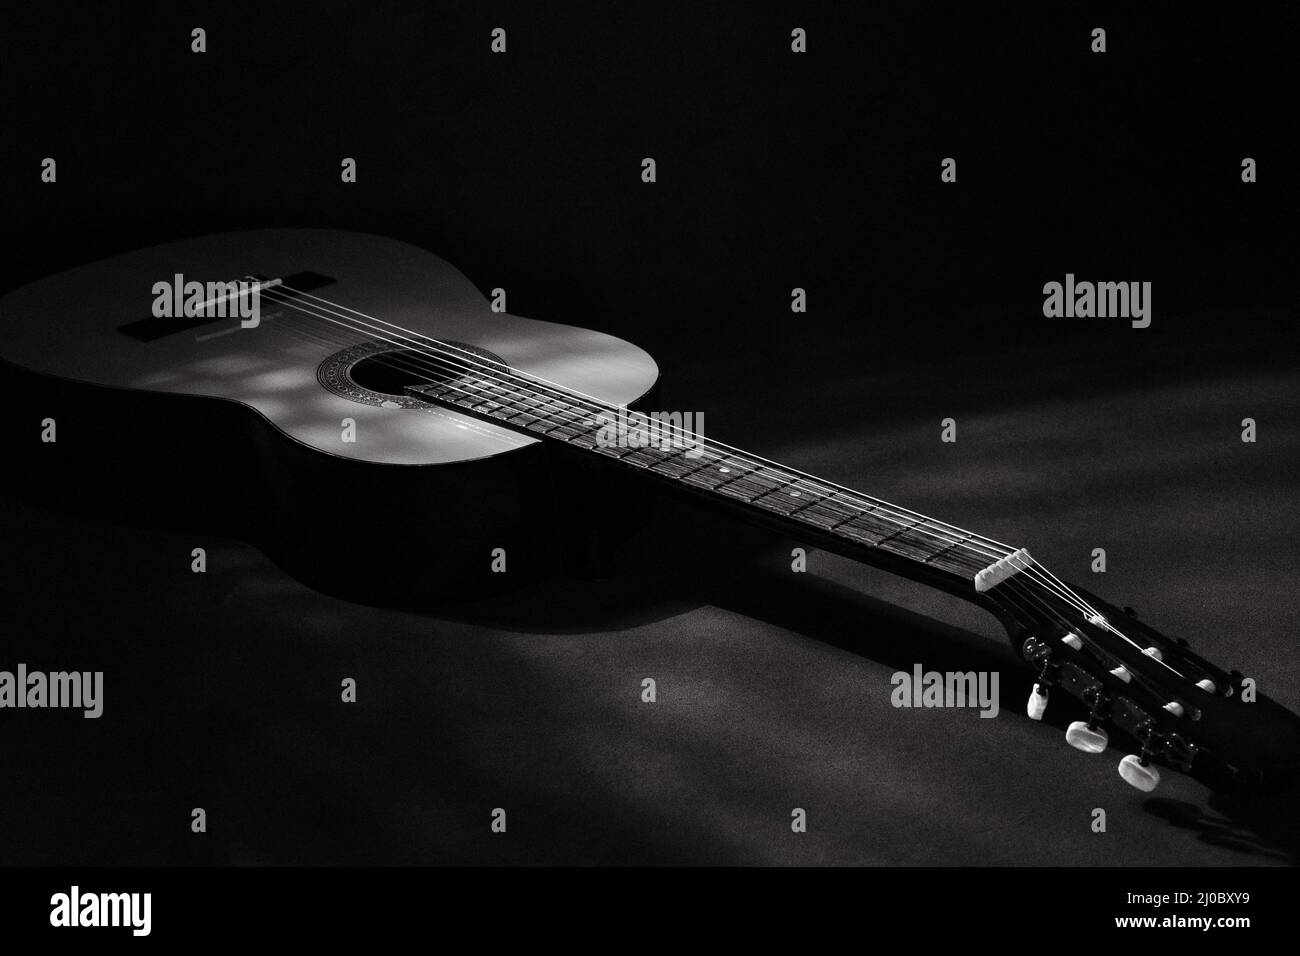 1974 Palma classical guitar Stock Photo